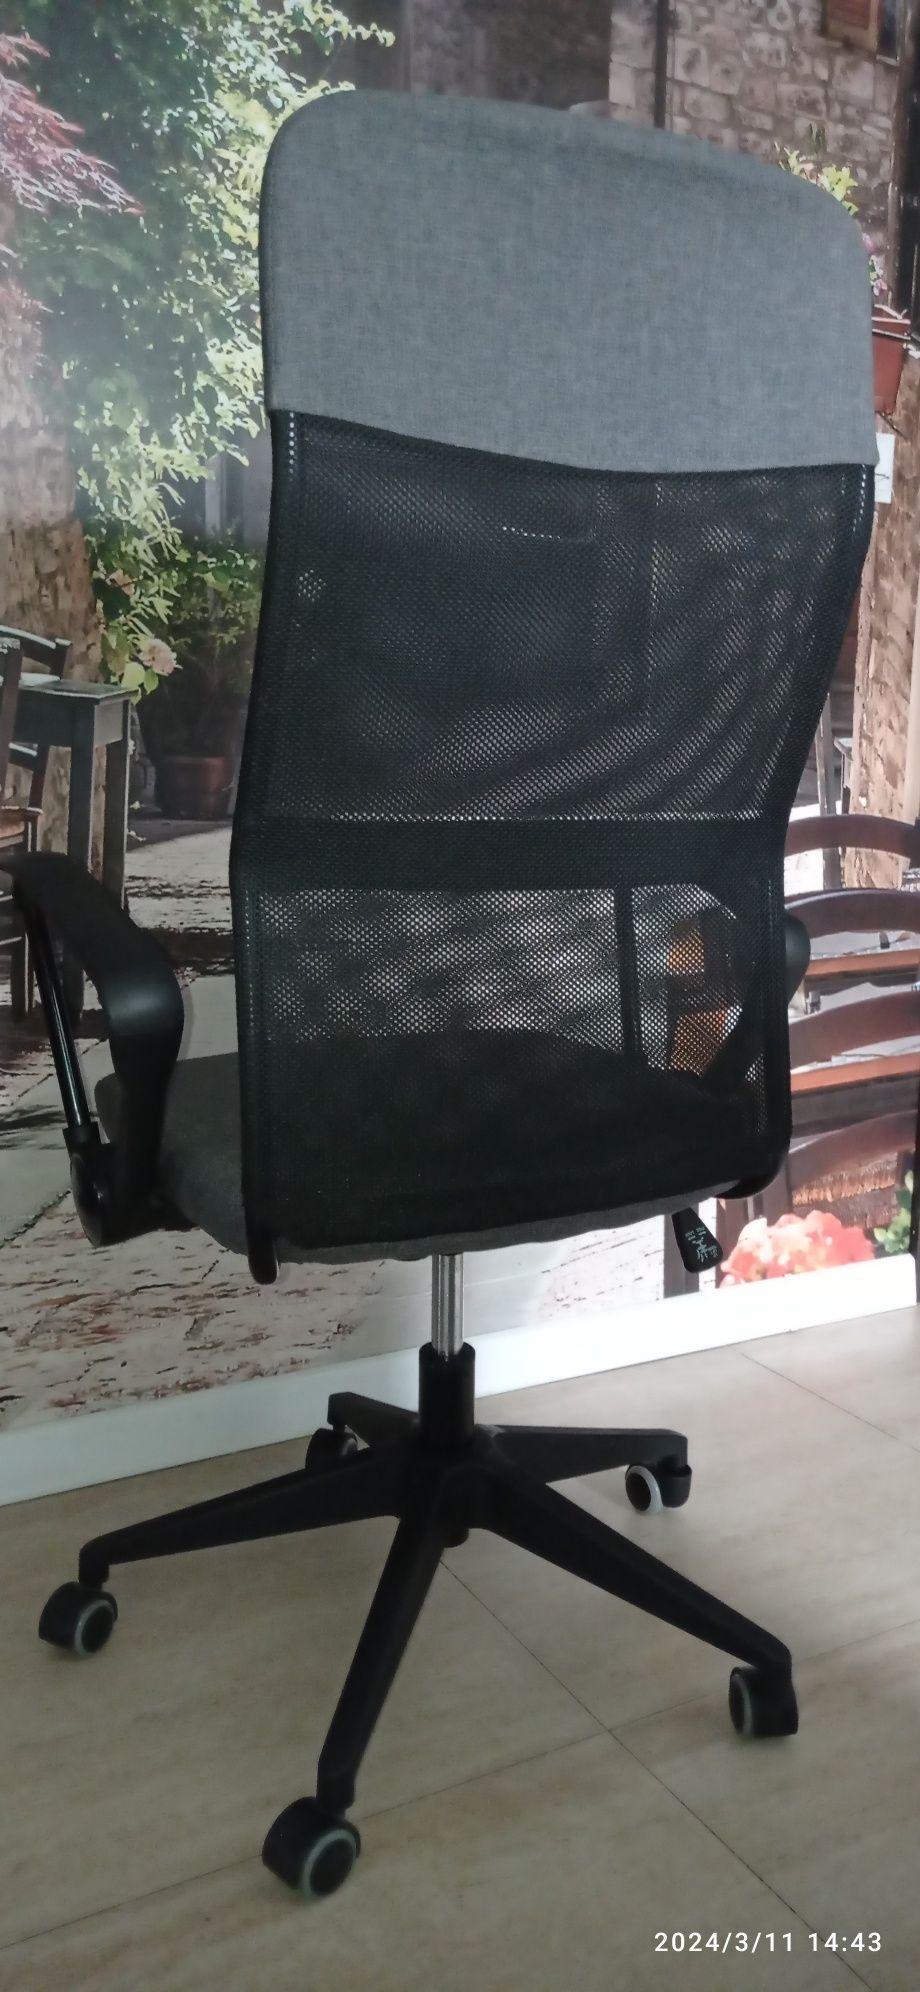 Krzesło biurowe obrotowe